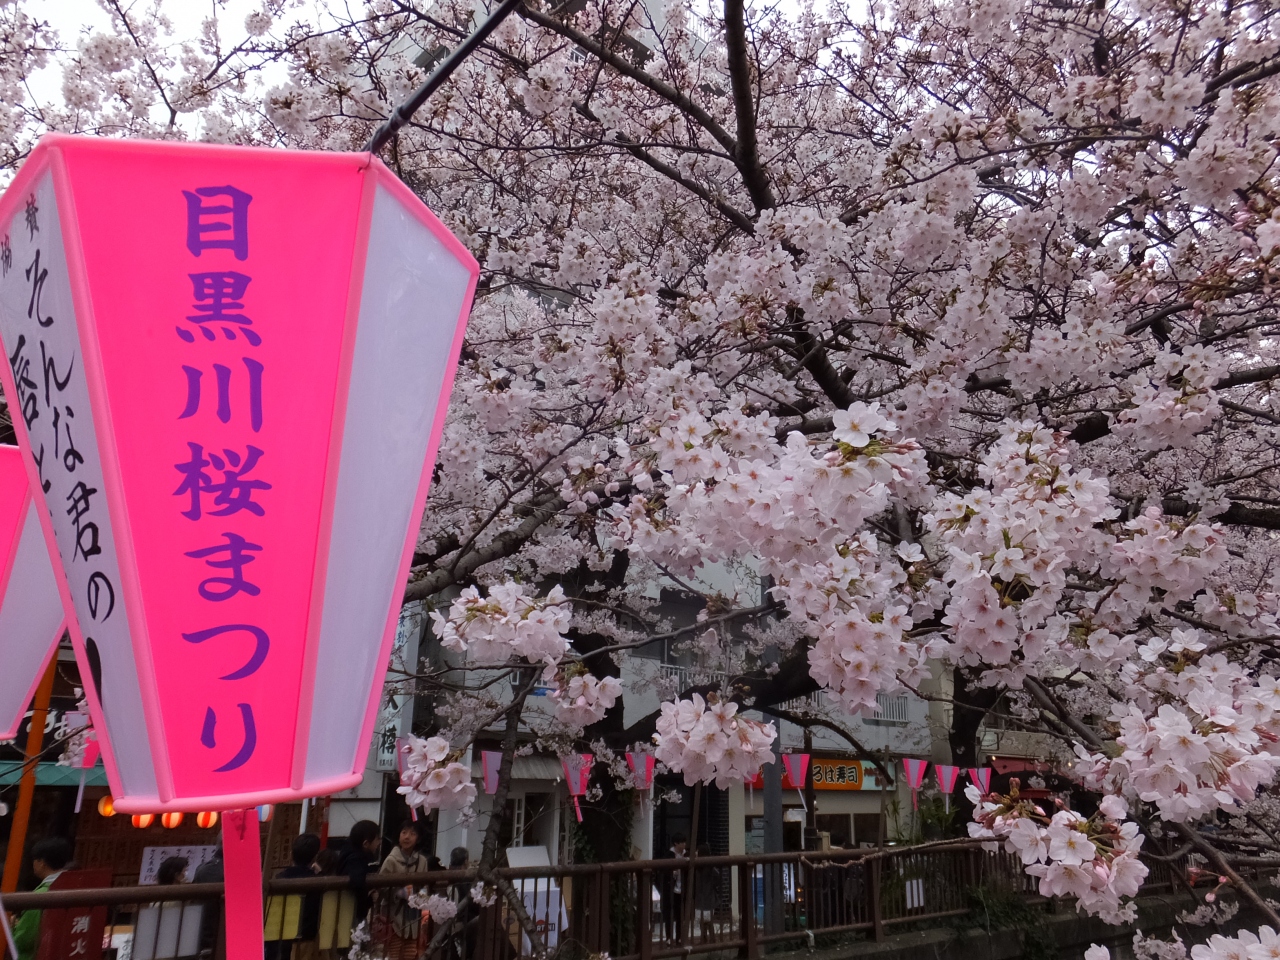 目黒川の桜は狂い咲き 幻想的なイルミネーションの虜になってしまいます